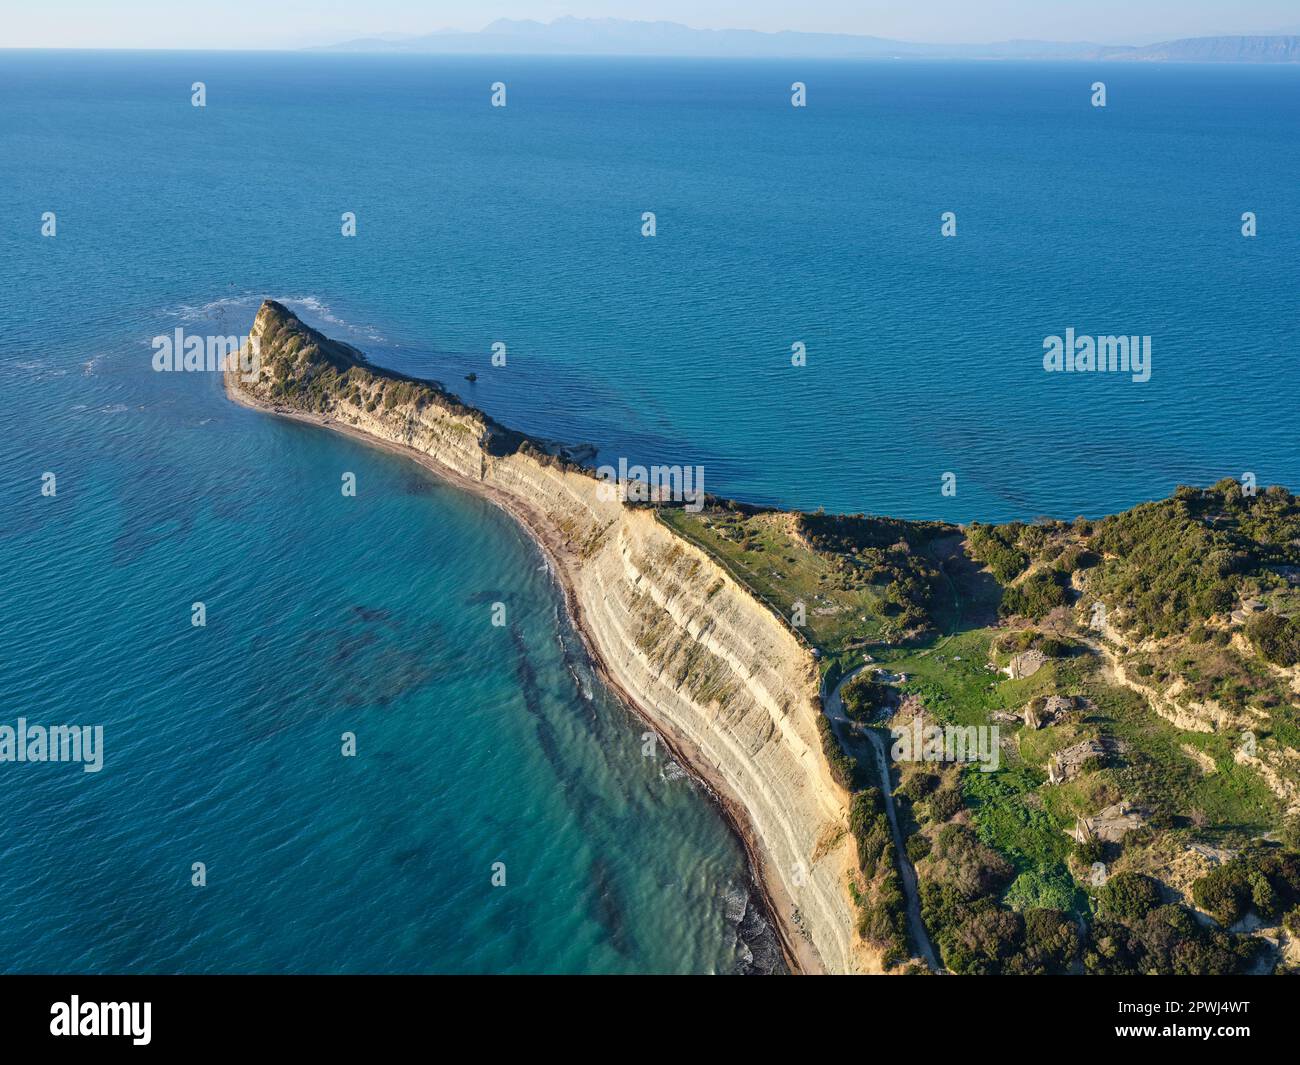 VISTA AEREA. Capo di Rodon che si affaccia sul Mare Adriatico, 4 bunker in basso a destra. Contea di Durrës, Albania. Foto Stock